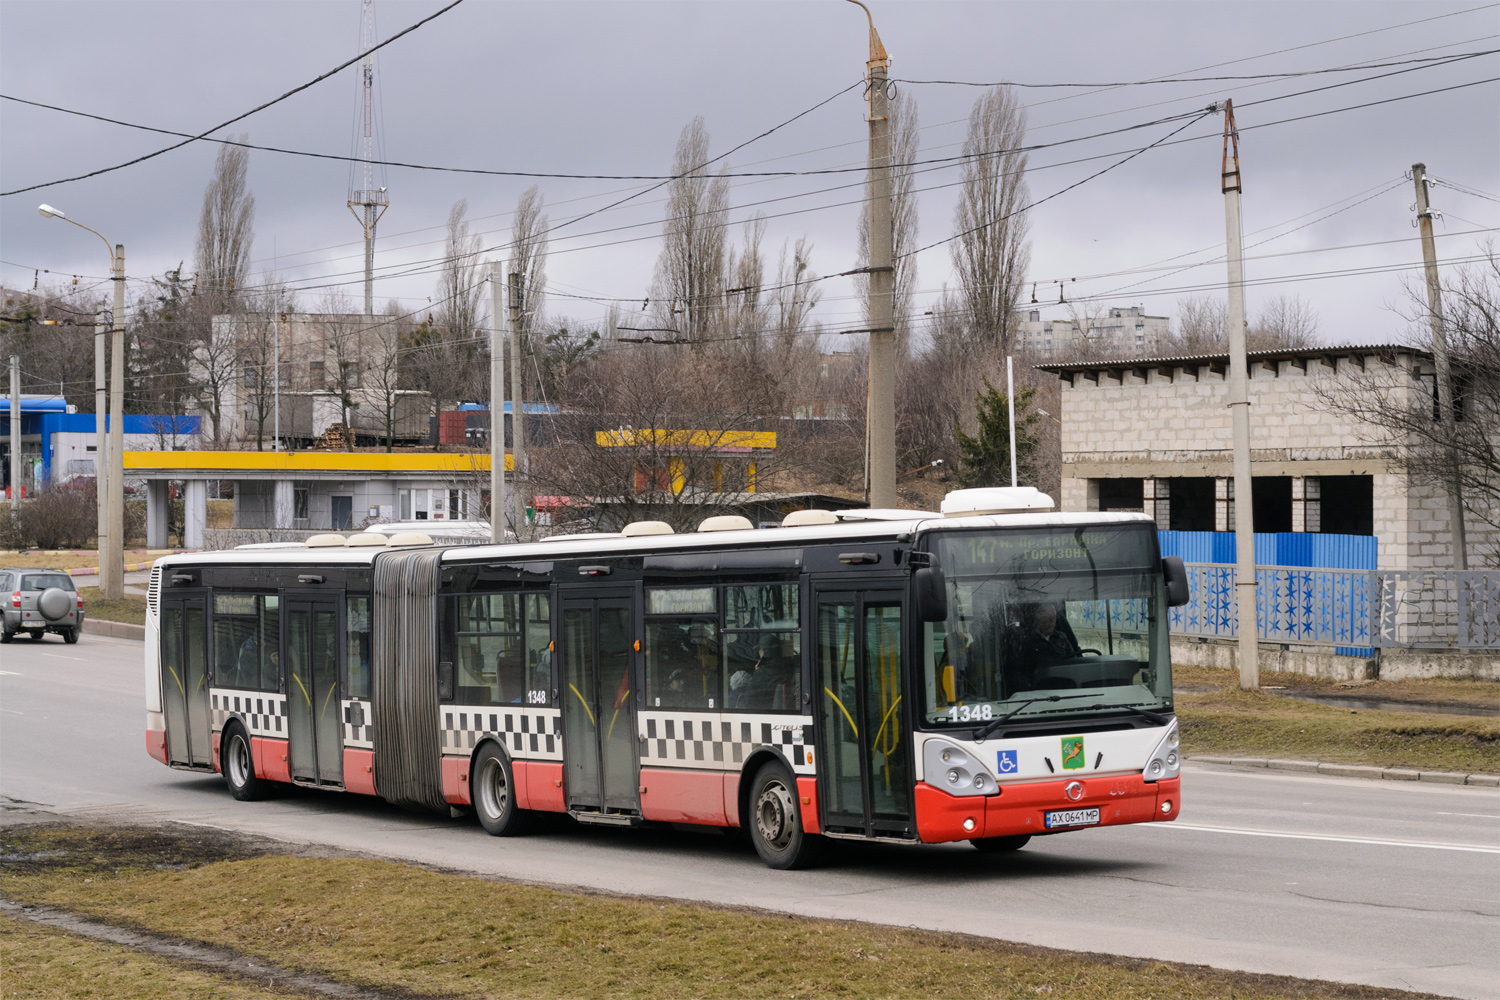 Kharkiv, Irisbus Citelis 18M No. 1348